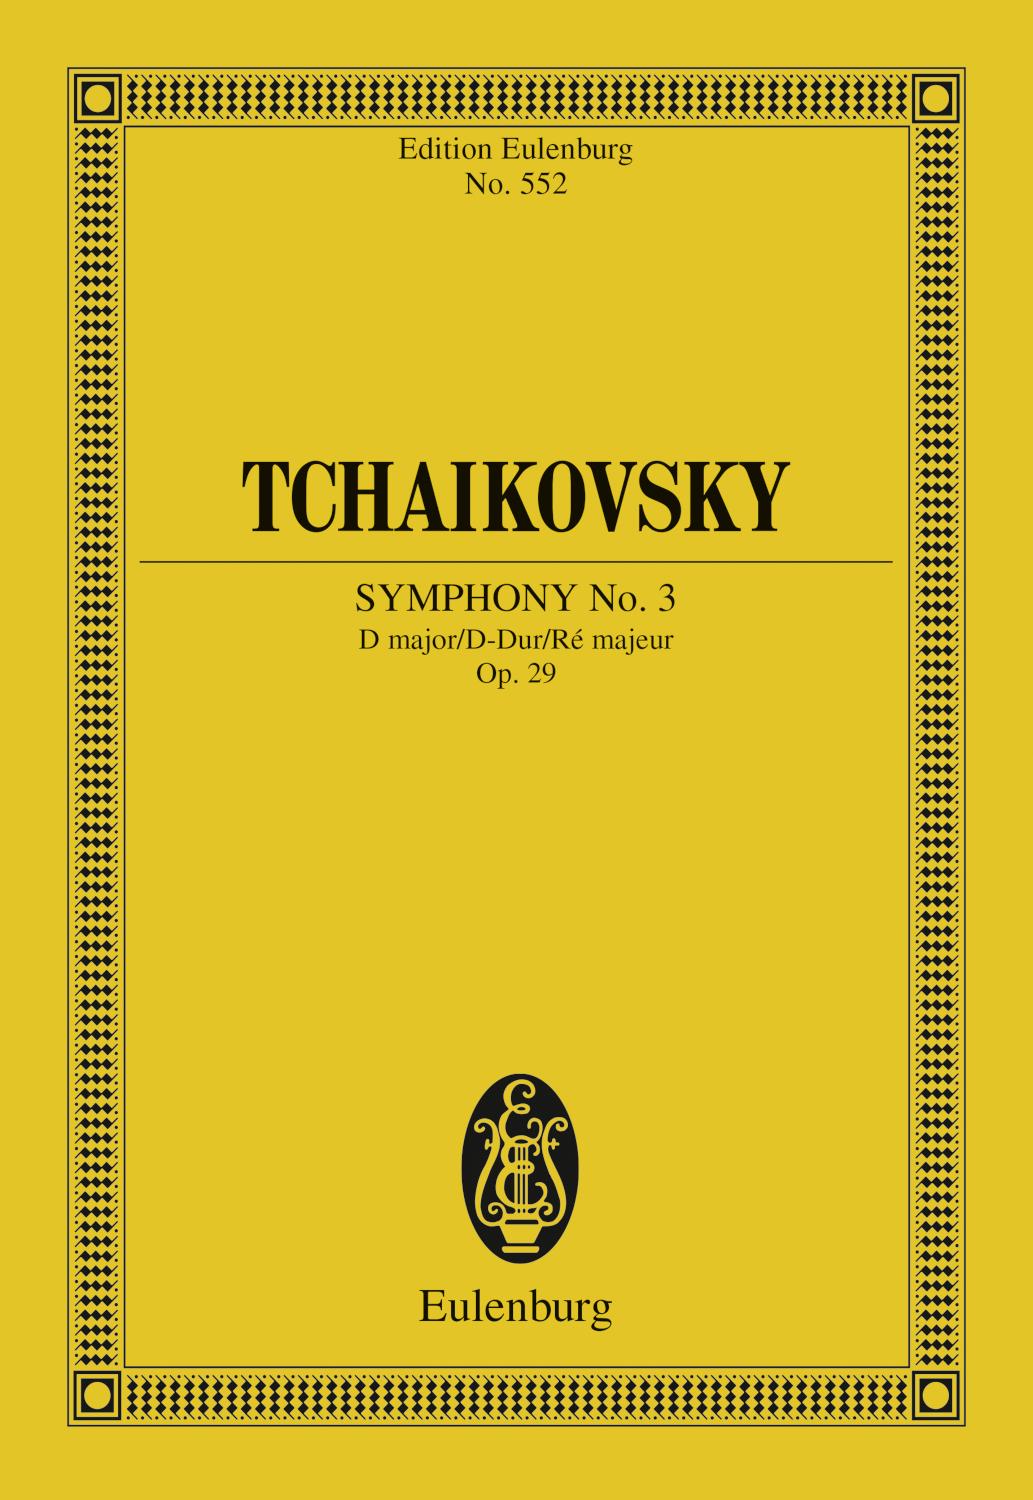 Symphony No. 3 D major Op. 29